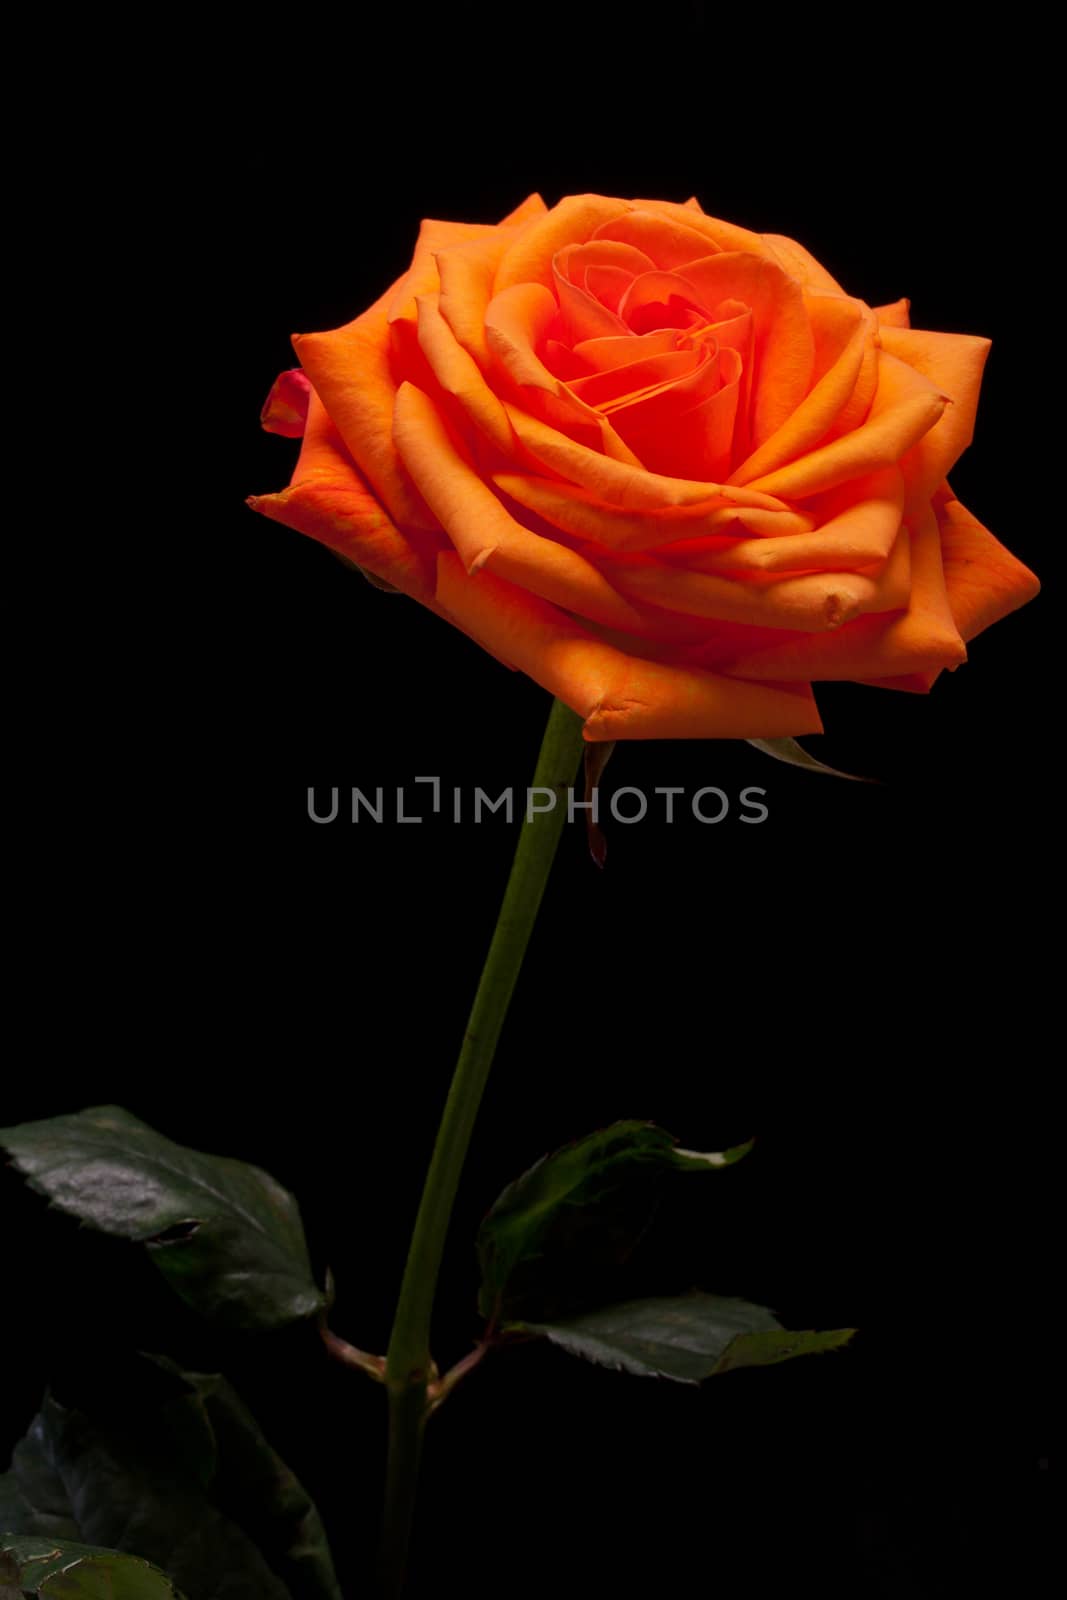  orange rose  by wjarek